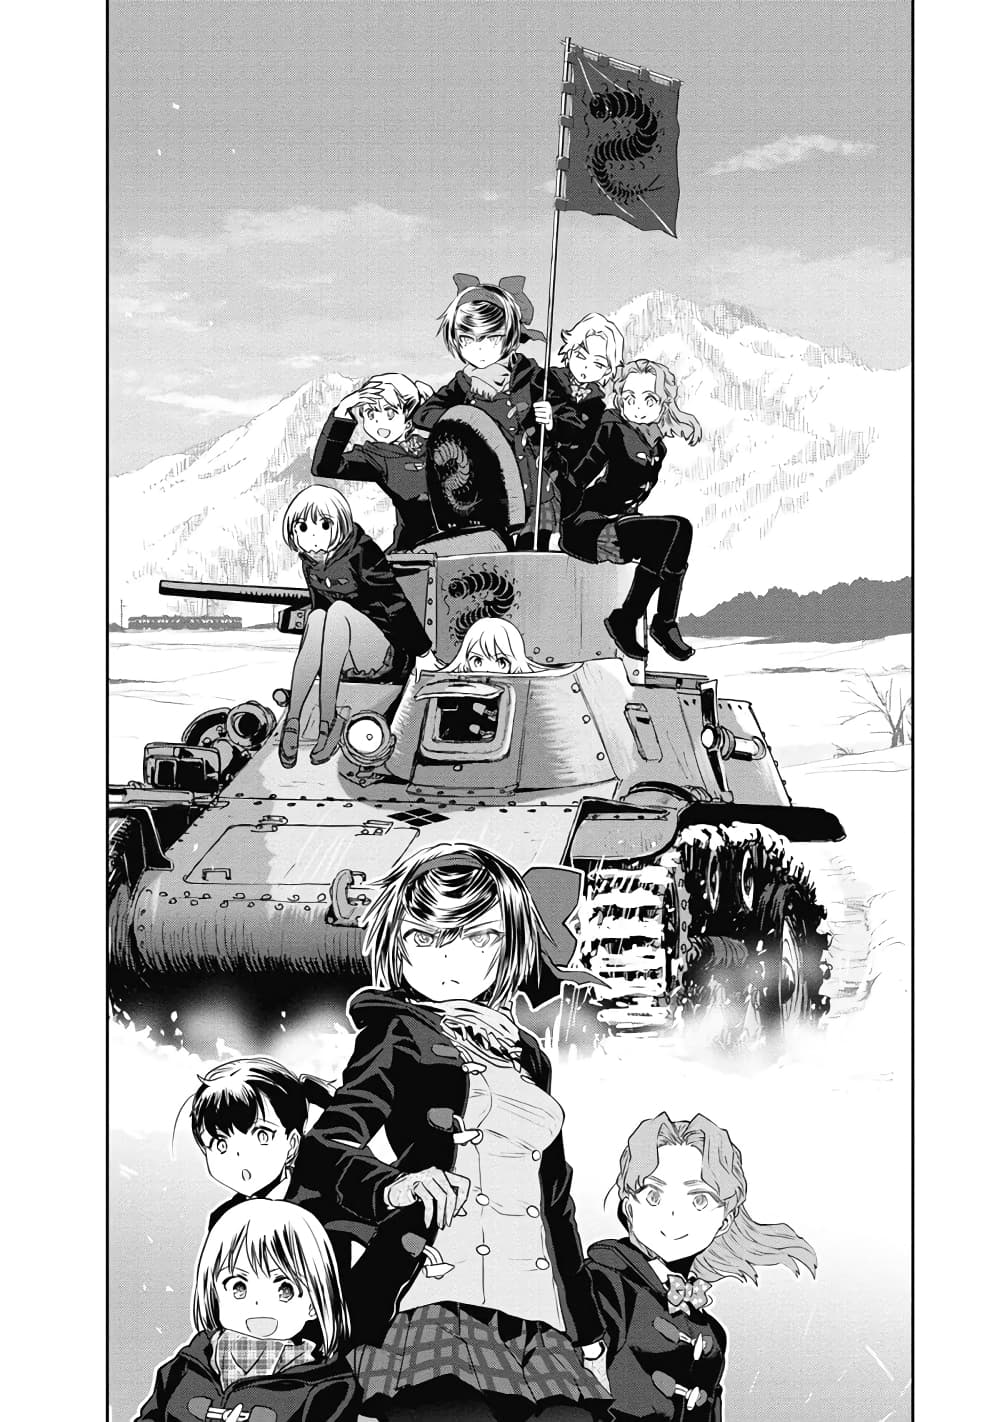 Girls Und Panzer: Ribbon Warrior 64-การผจญภัยของทีมตะขาบยังคงดำเนินต่อไป (จบ)